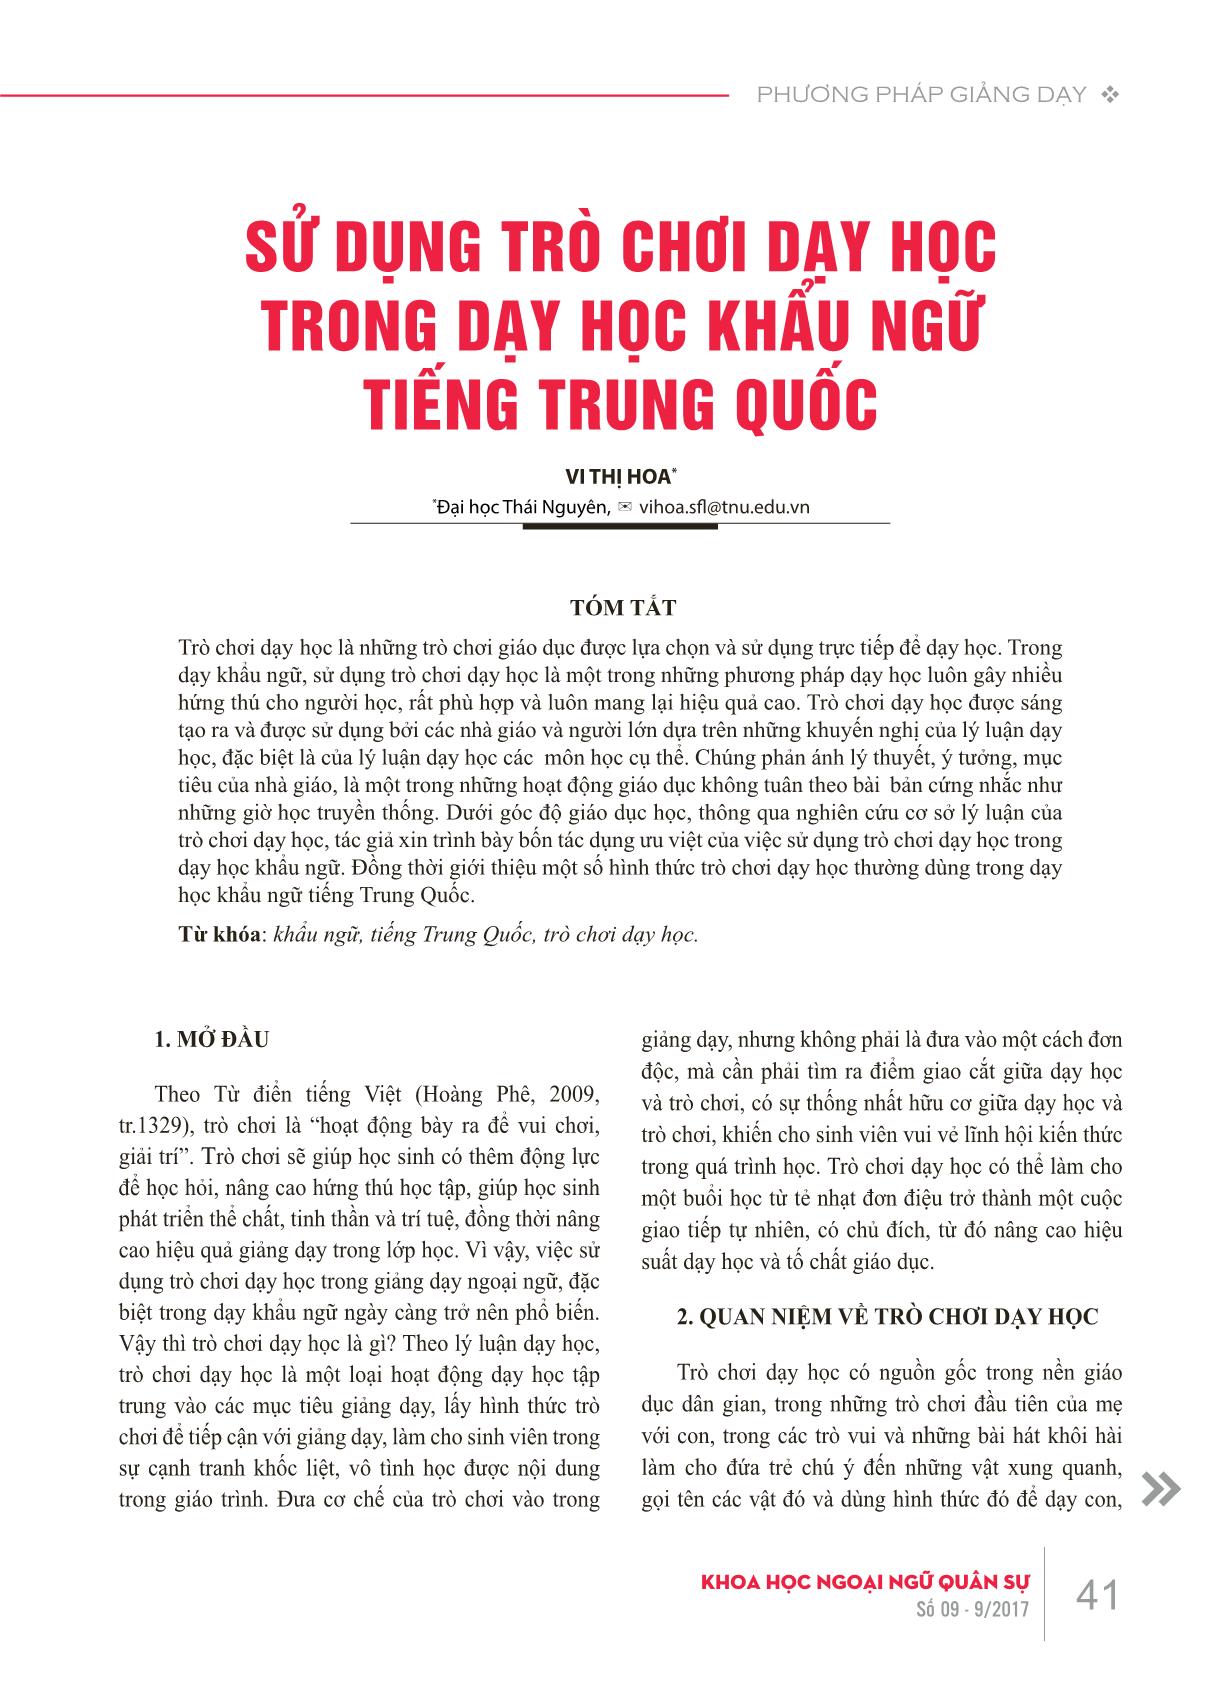 Sử dụng trò chơi dạy học trong dạy học khẩu ngữ tiếng Trung Quốc trang 1